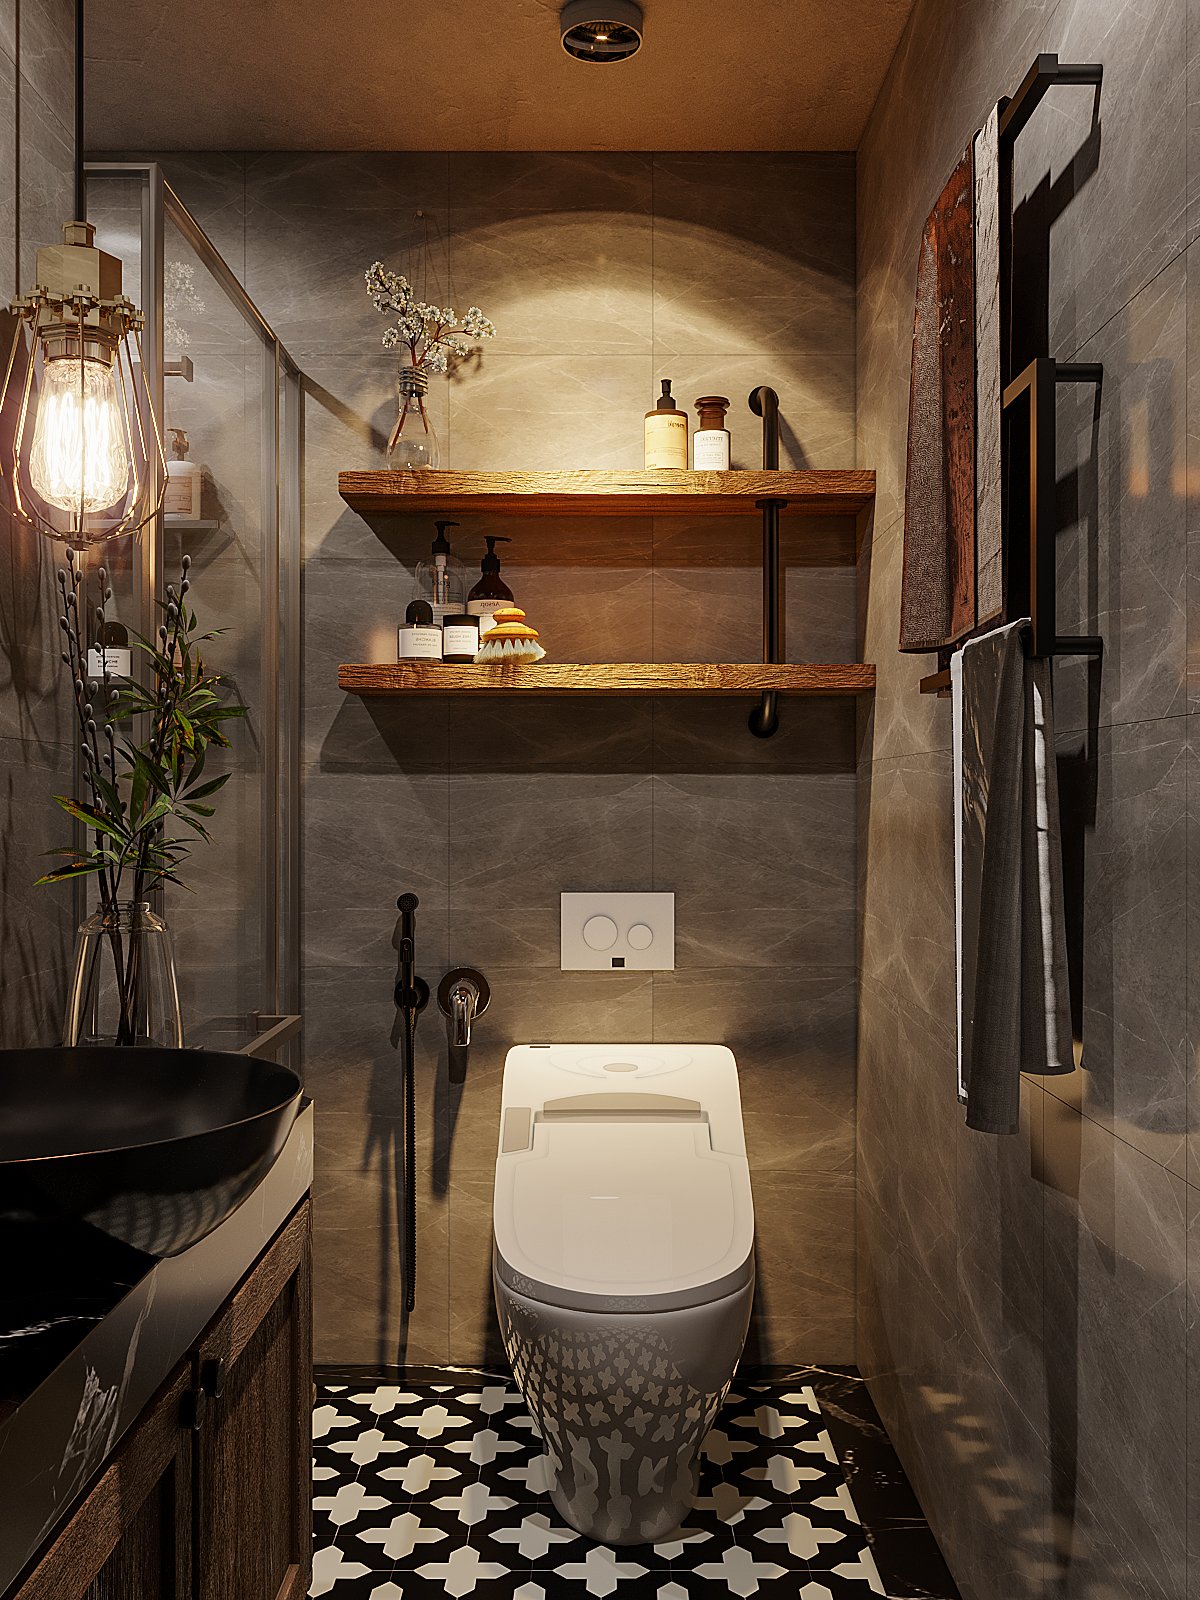 Phòng tắm thứ hai với thiết kế nội thất tương tự. Kệ mở bằng gỗ gắn tường nổi bật trên nền xi măng xám mộc mạc.